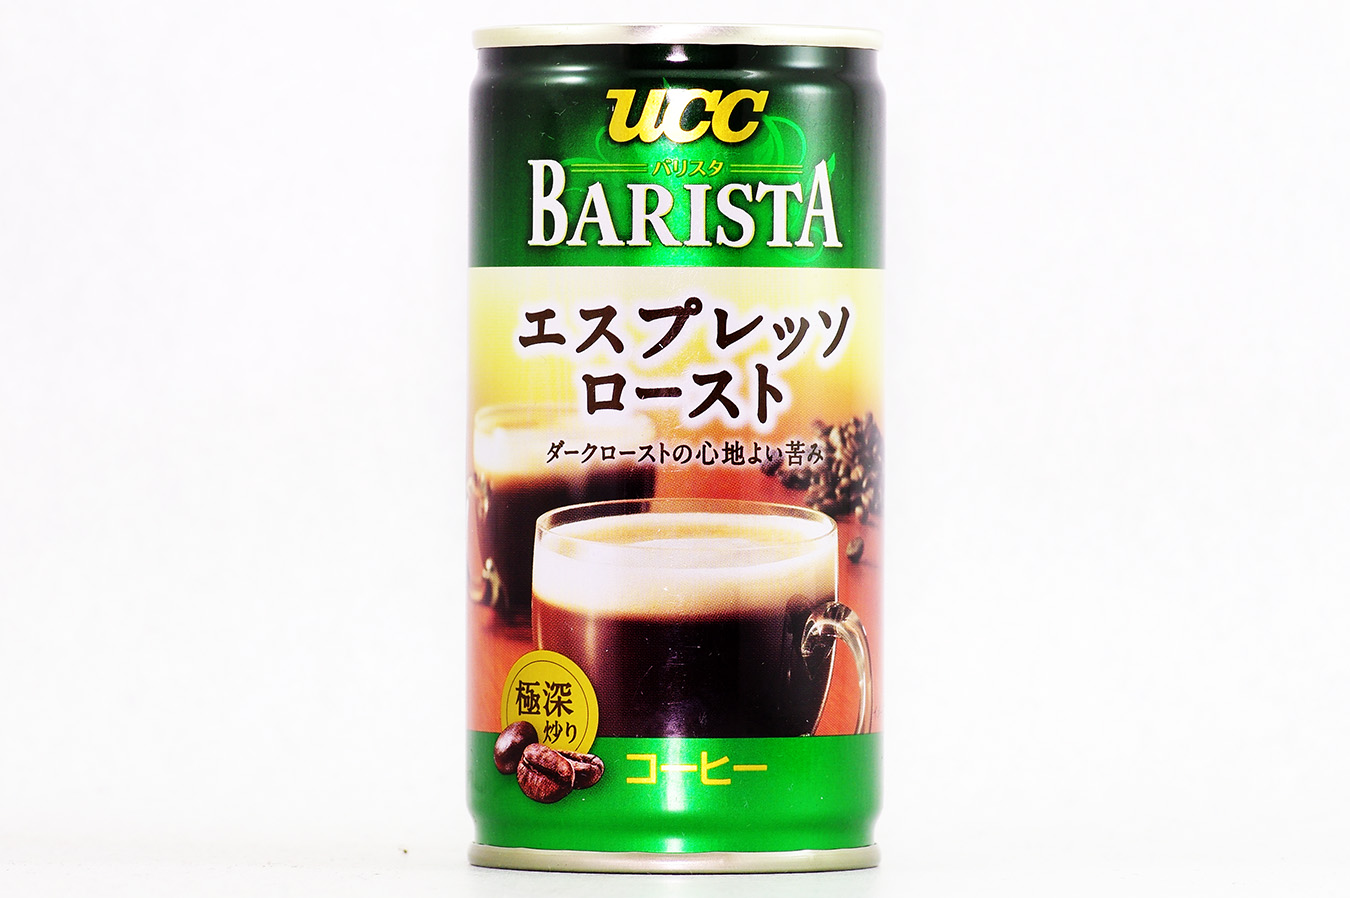 UCC BARISTA エスプレッソロースト 185g缶 2016年6月